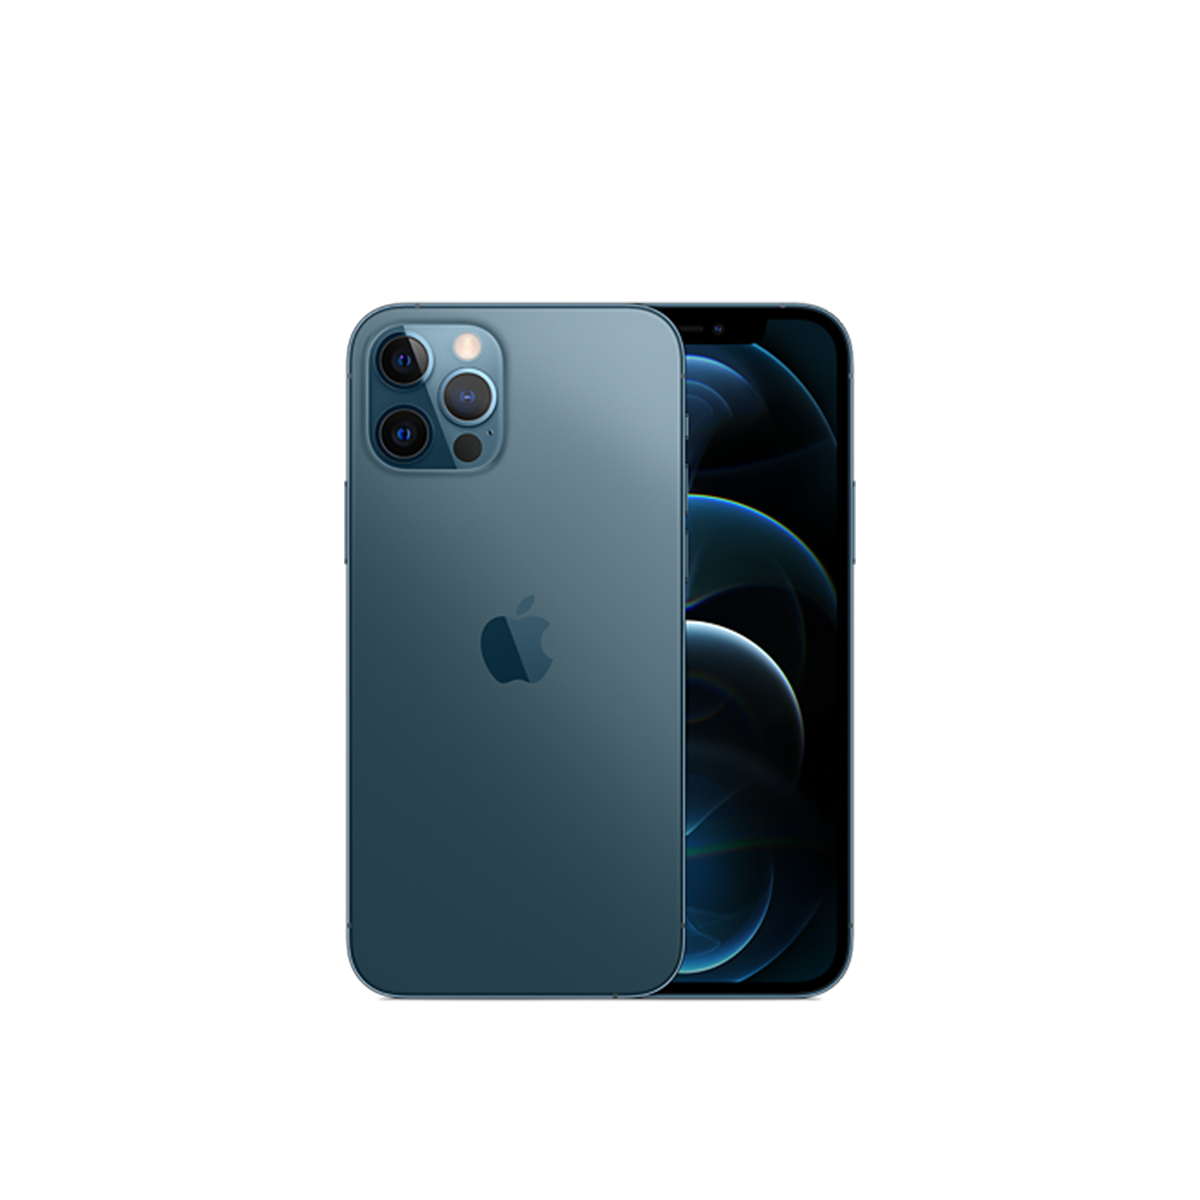  Điện Thoại Apple iPhone 12 Pro Max Chính Hãng VN/A 